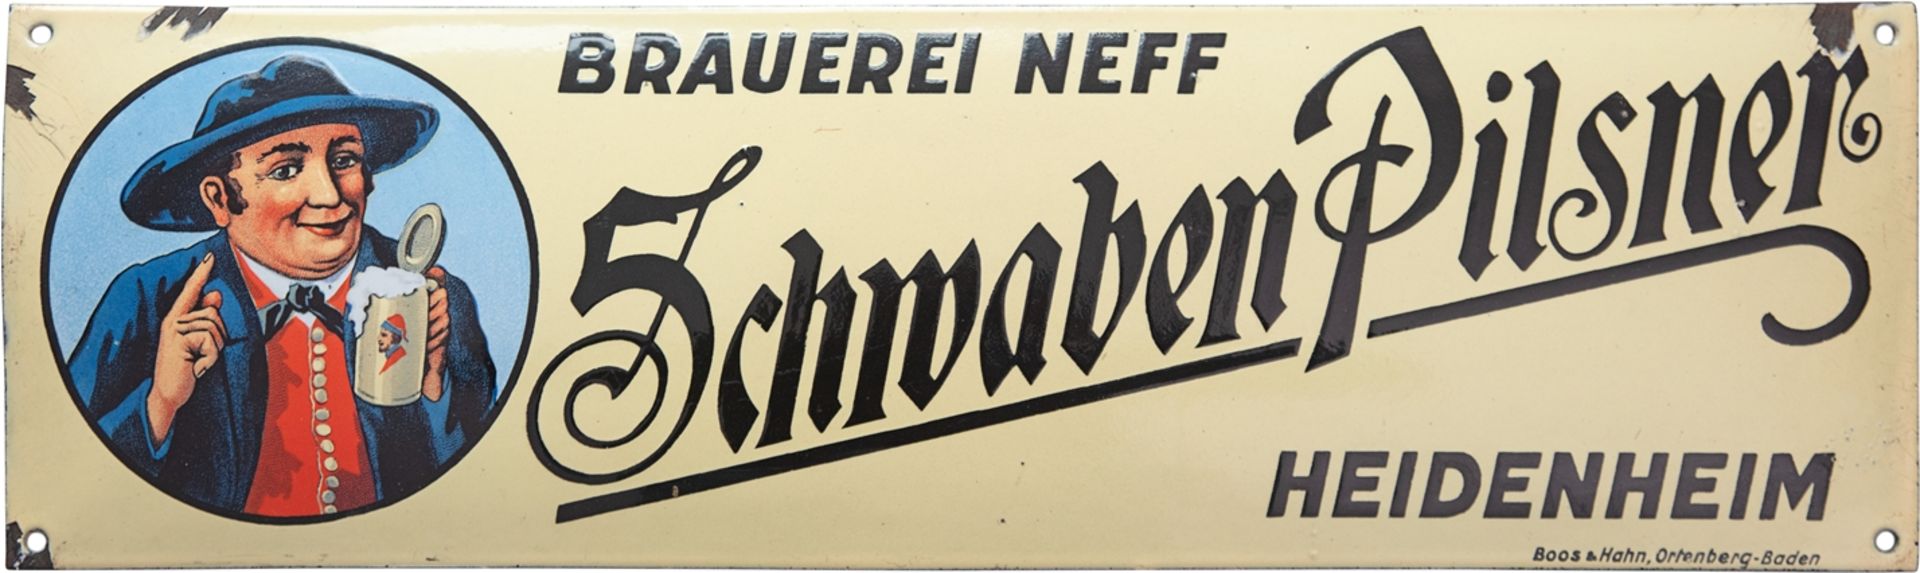 Emailschild Brauerei Neff, Schwaben Pilsner, Heidenheim, um 1920